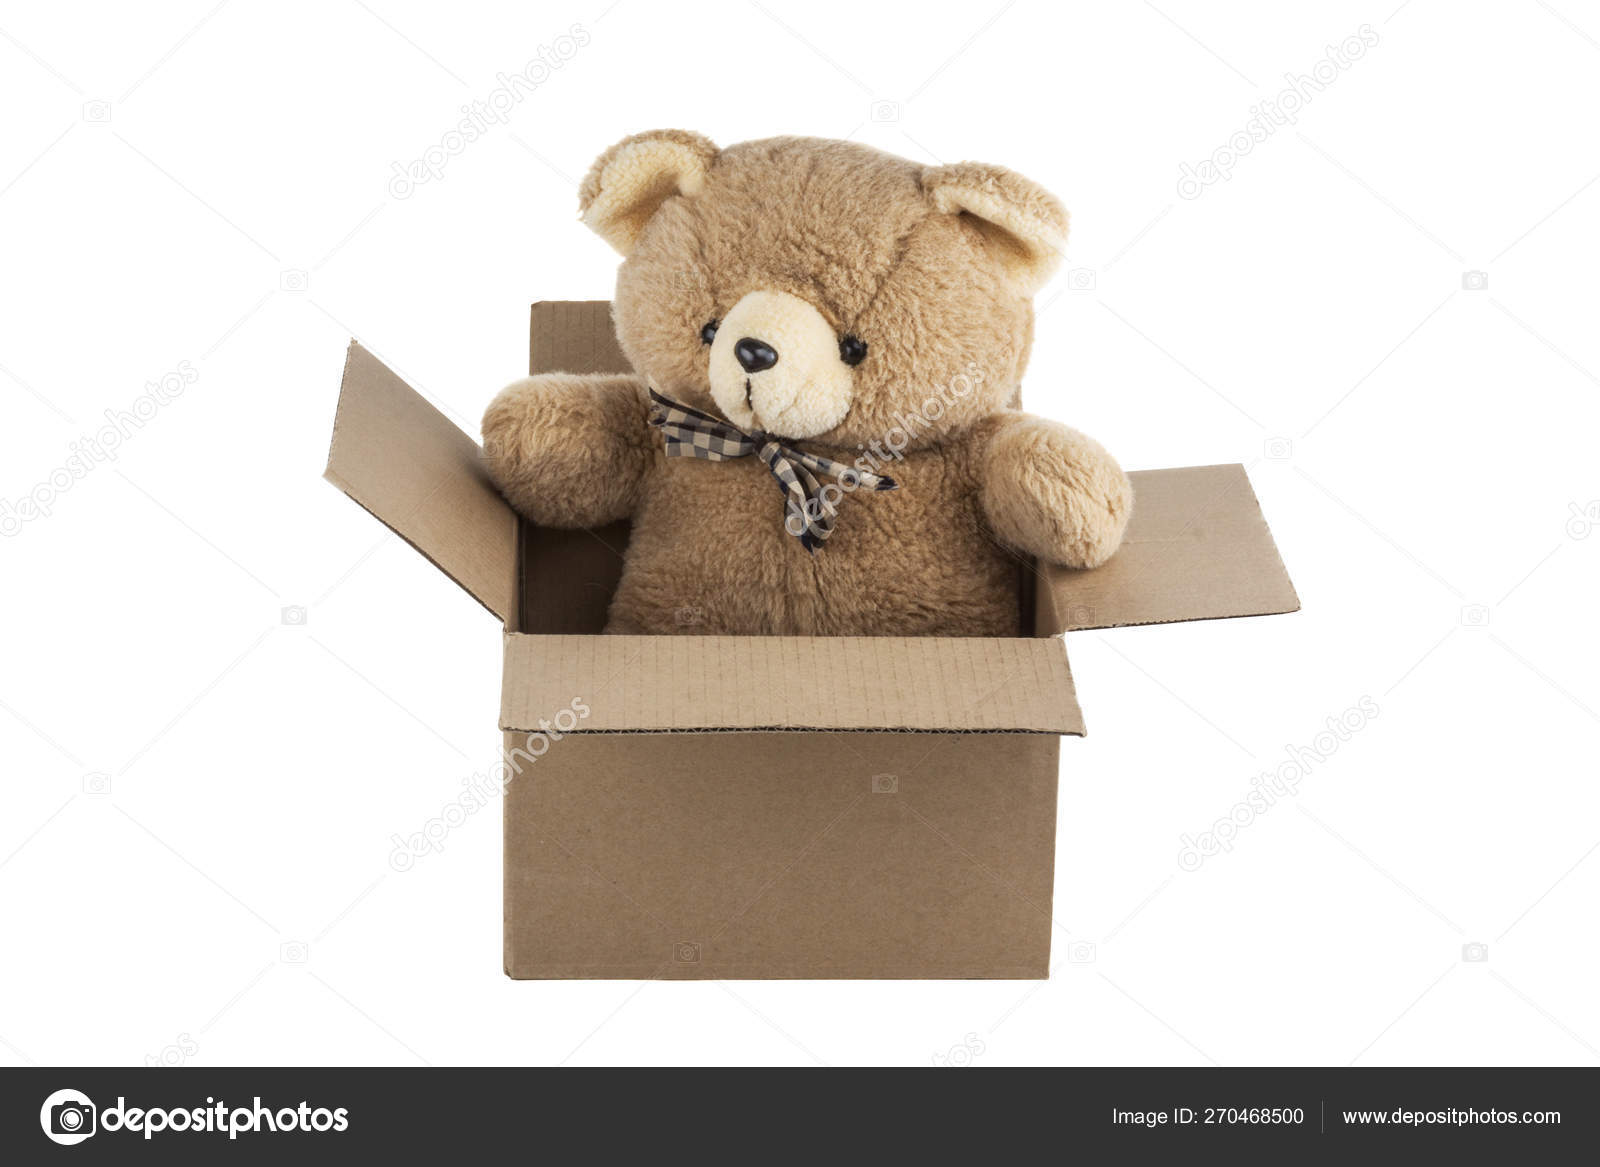 teddy in a box